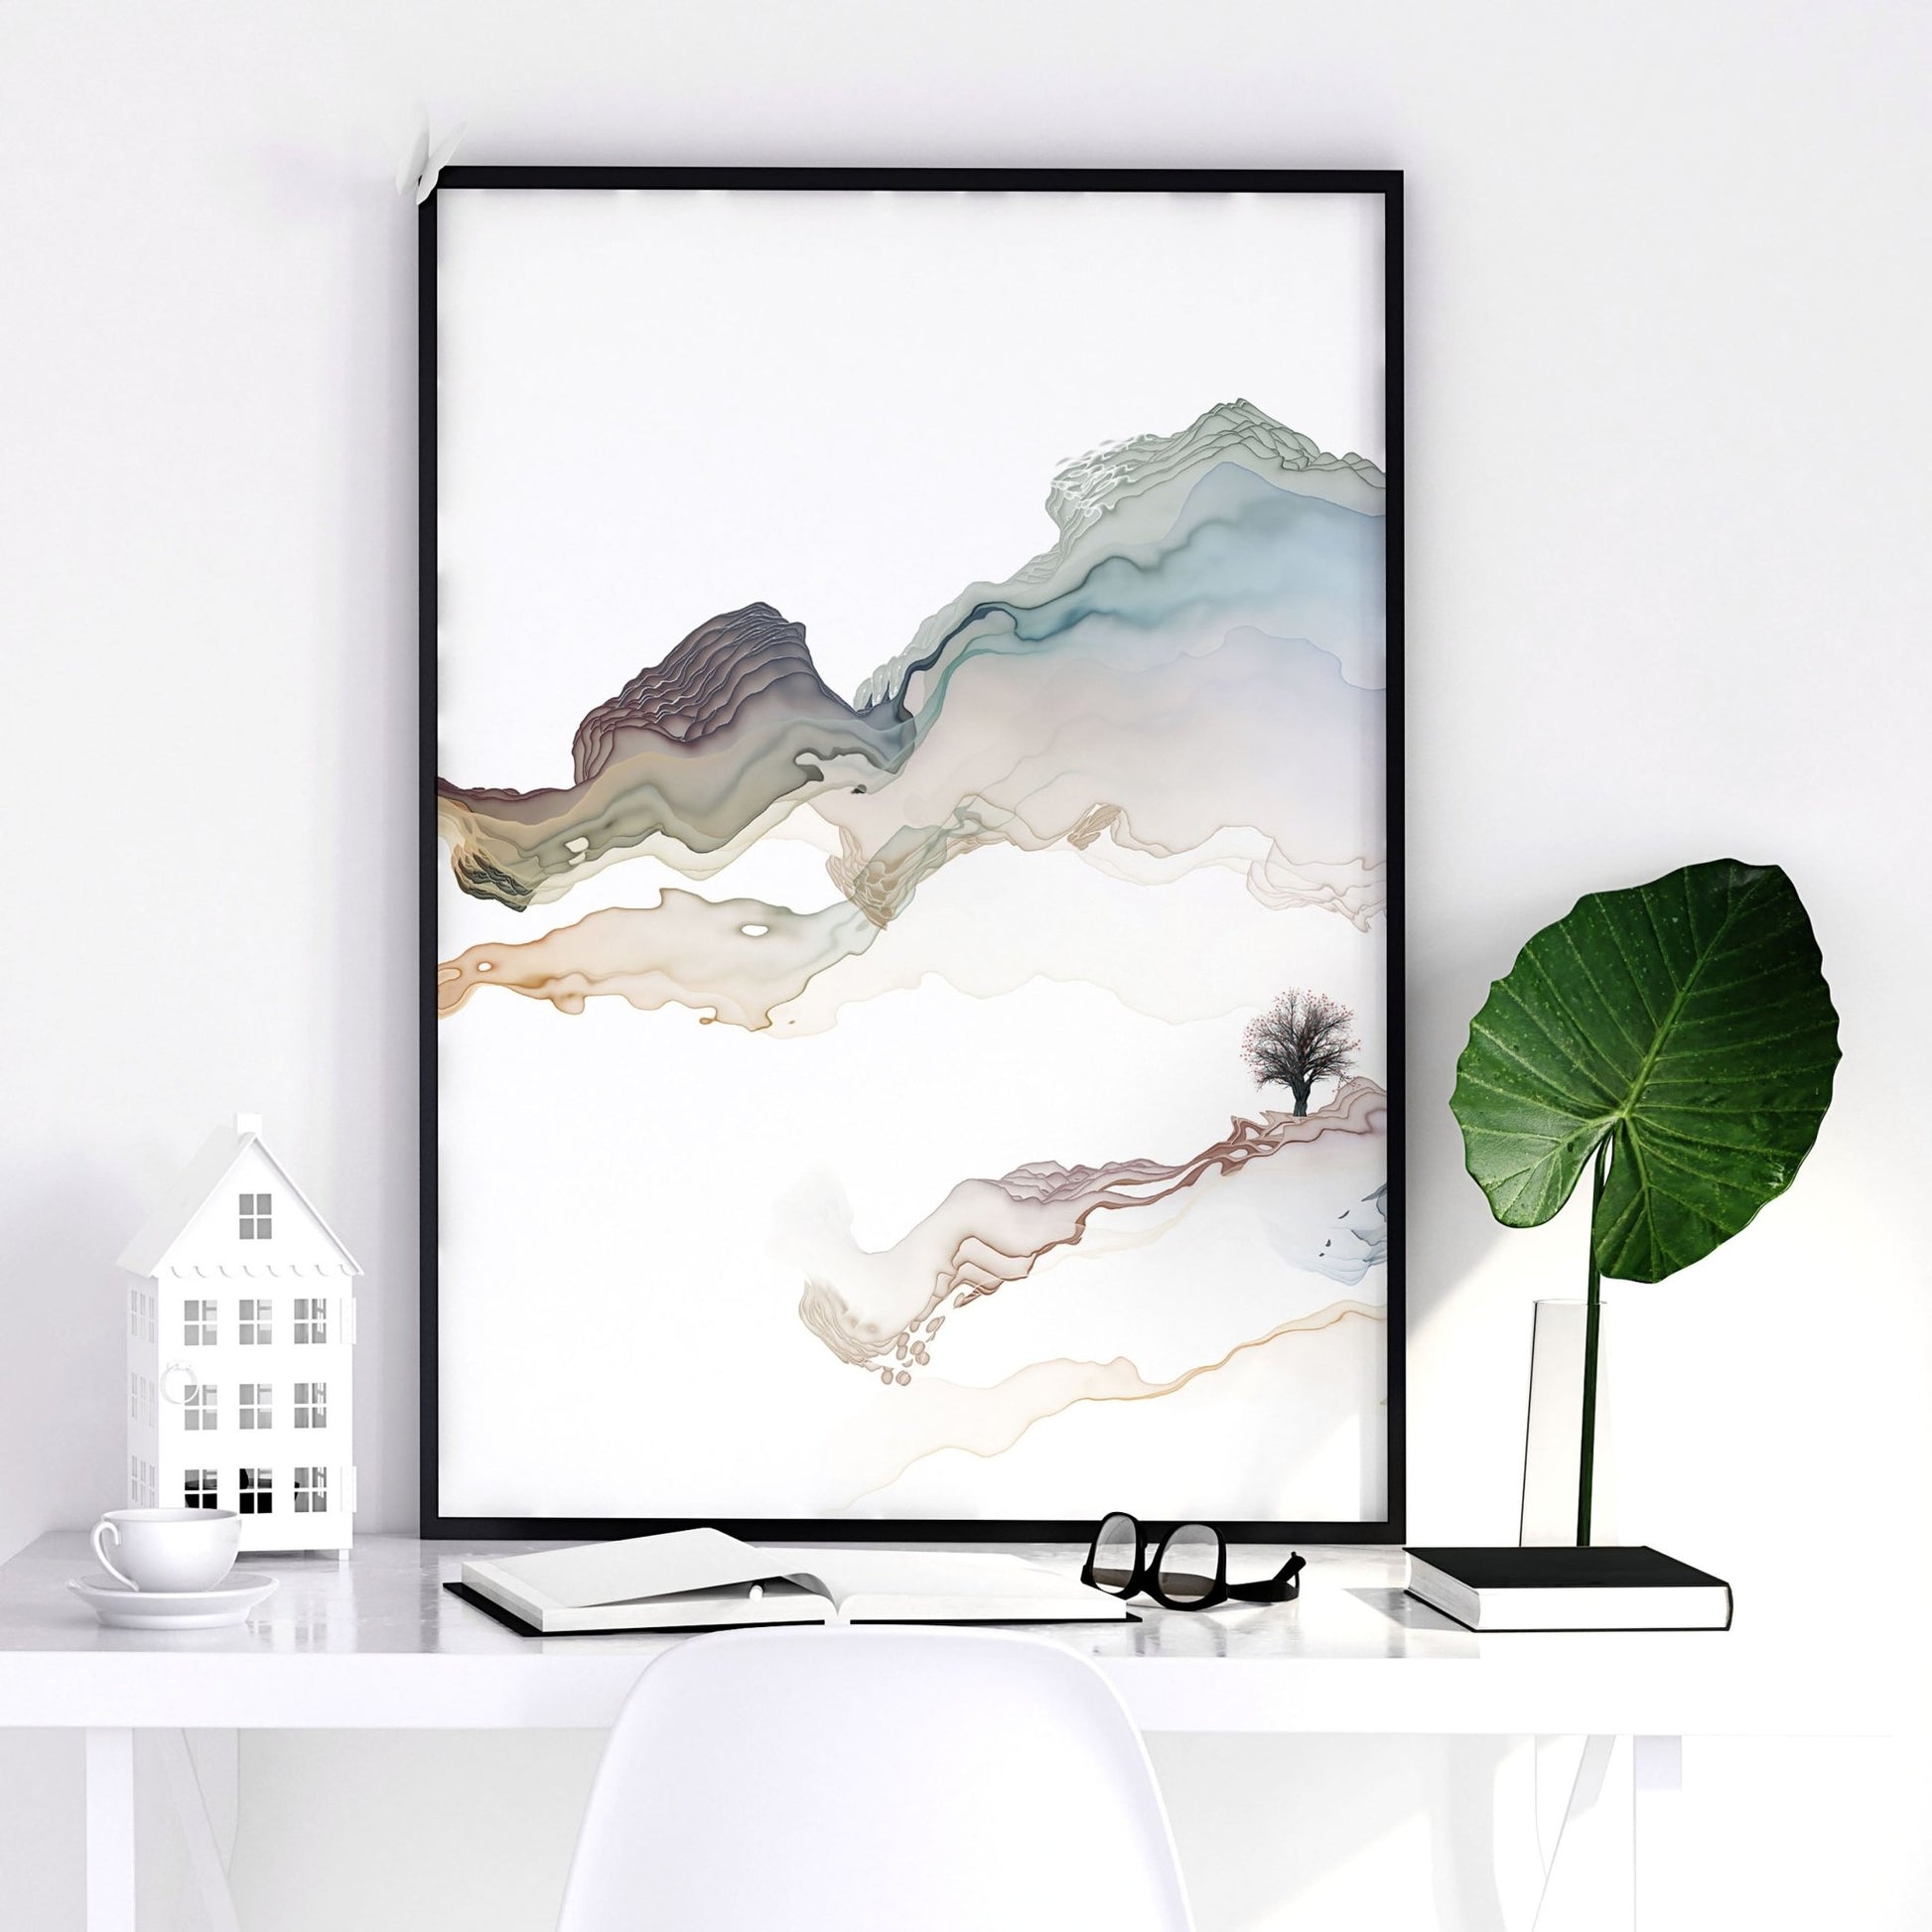 Modern home office ideas | set of 3 wall art prints - About Wall Art